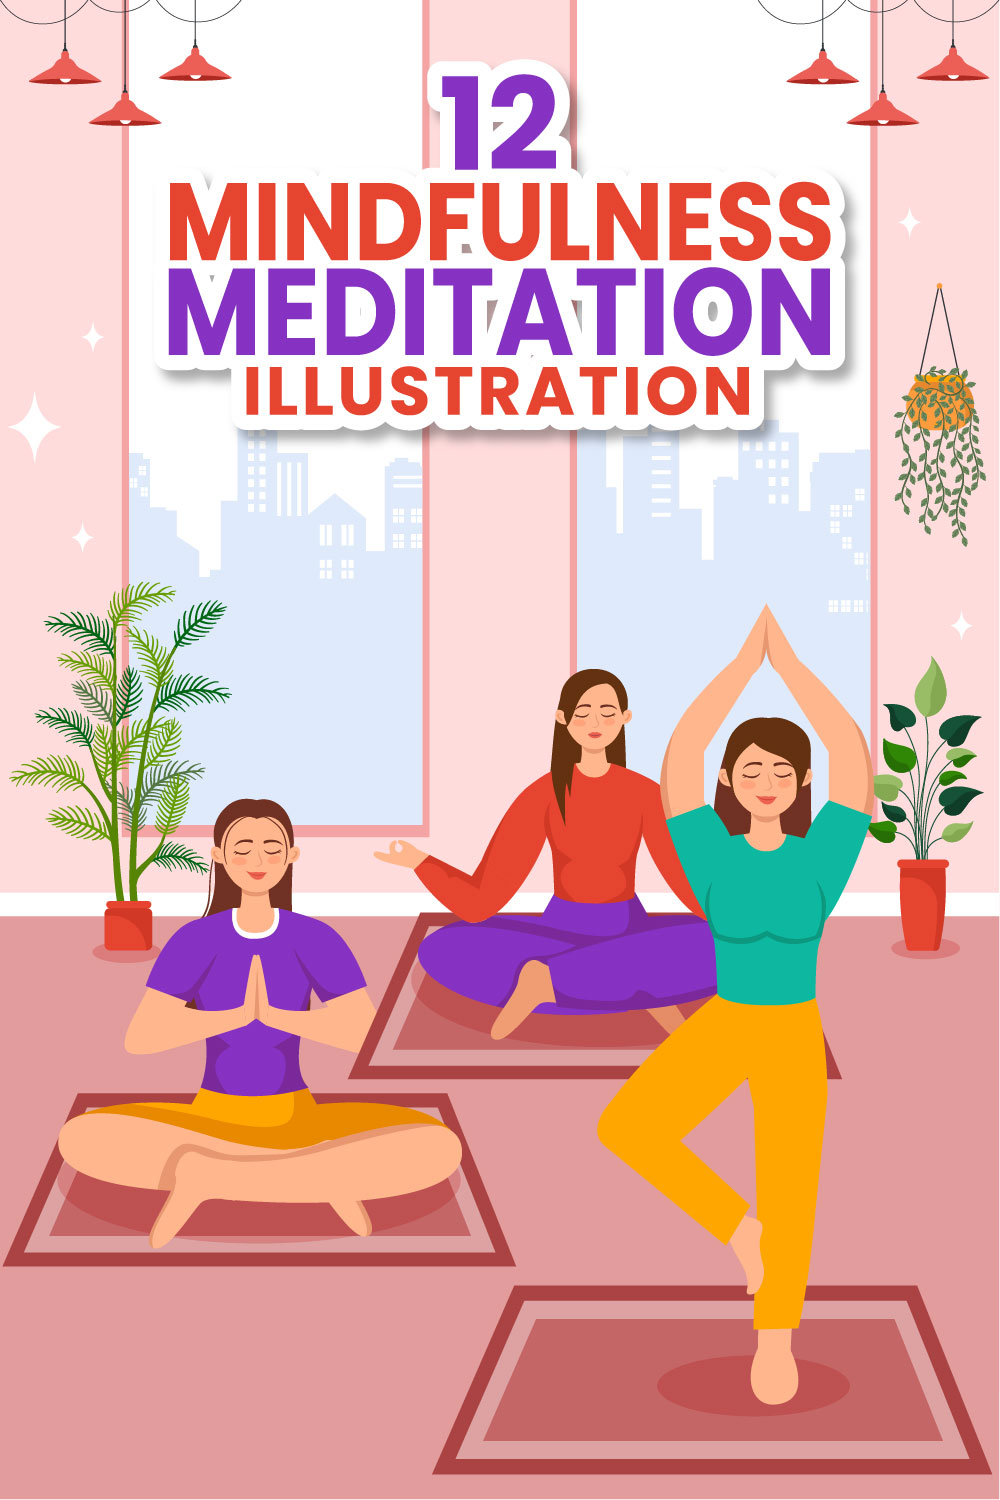 12 Mindfulness Meditation Illustration pinterest preview image.